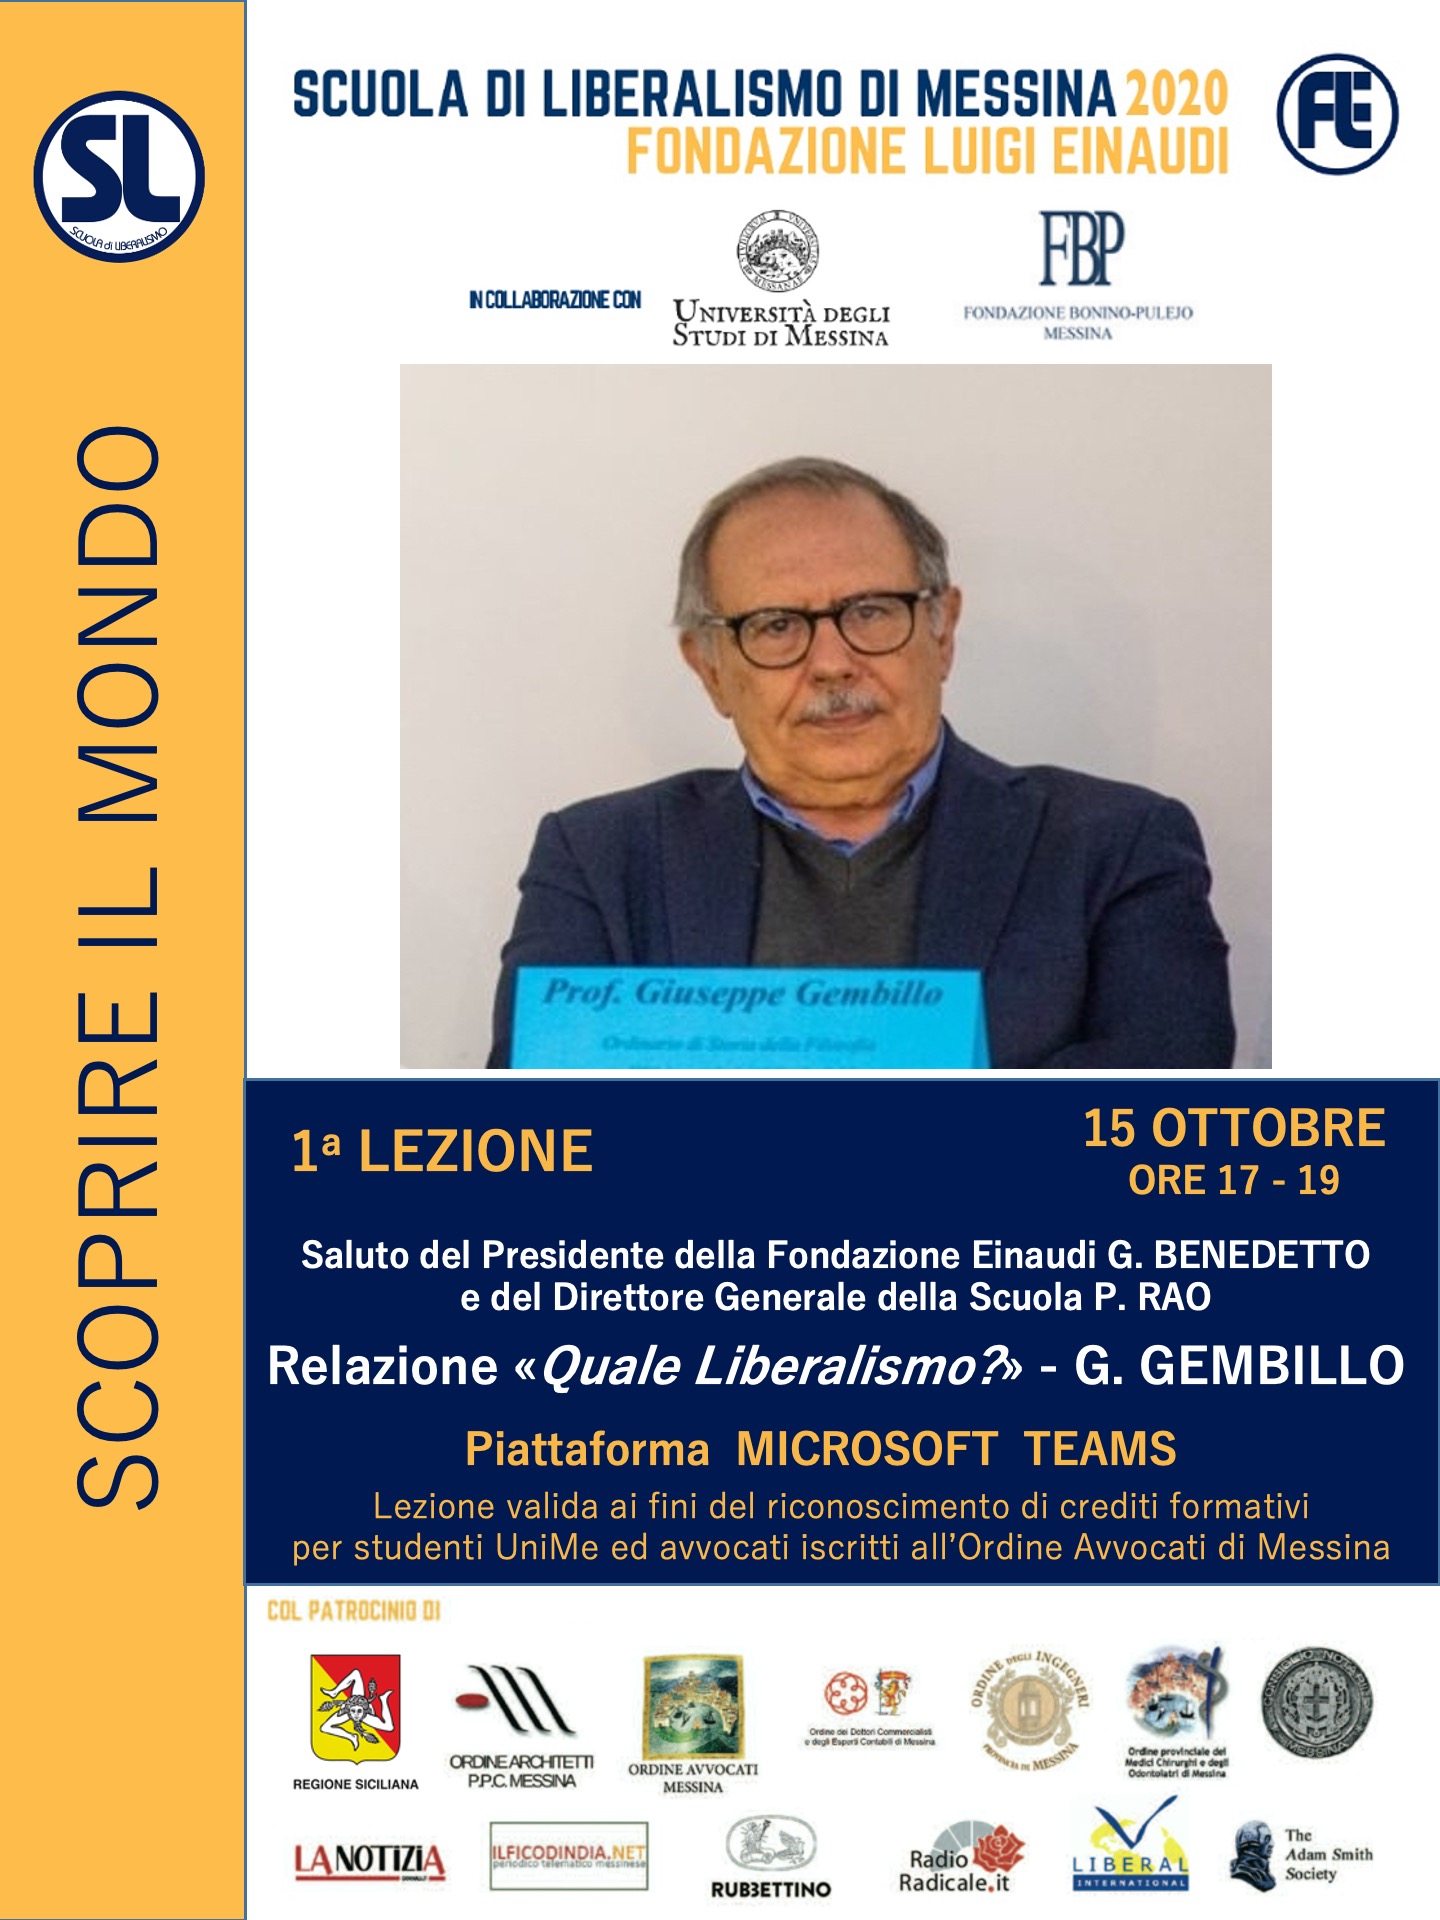 Giovedì 15 ottobre 2020 inizierà la Scuola di Liberalismo di Messina. Porterà il saluto della Fondazione Einaudi il Presidente Giuseppe Benedetto